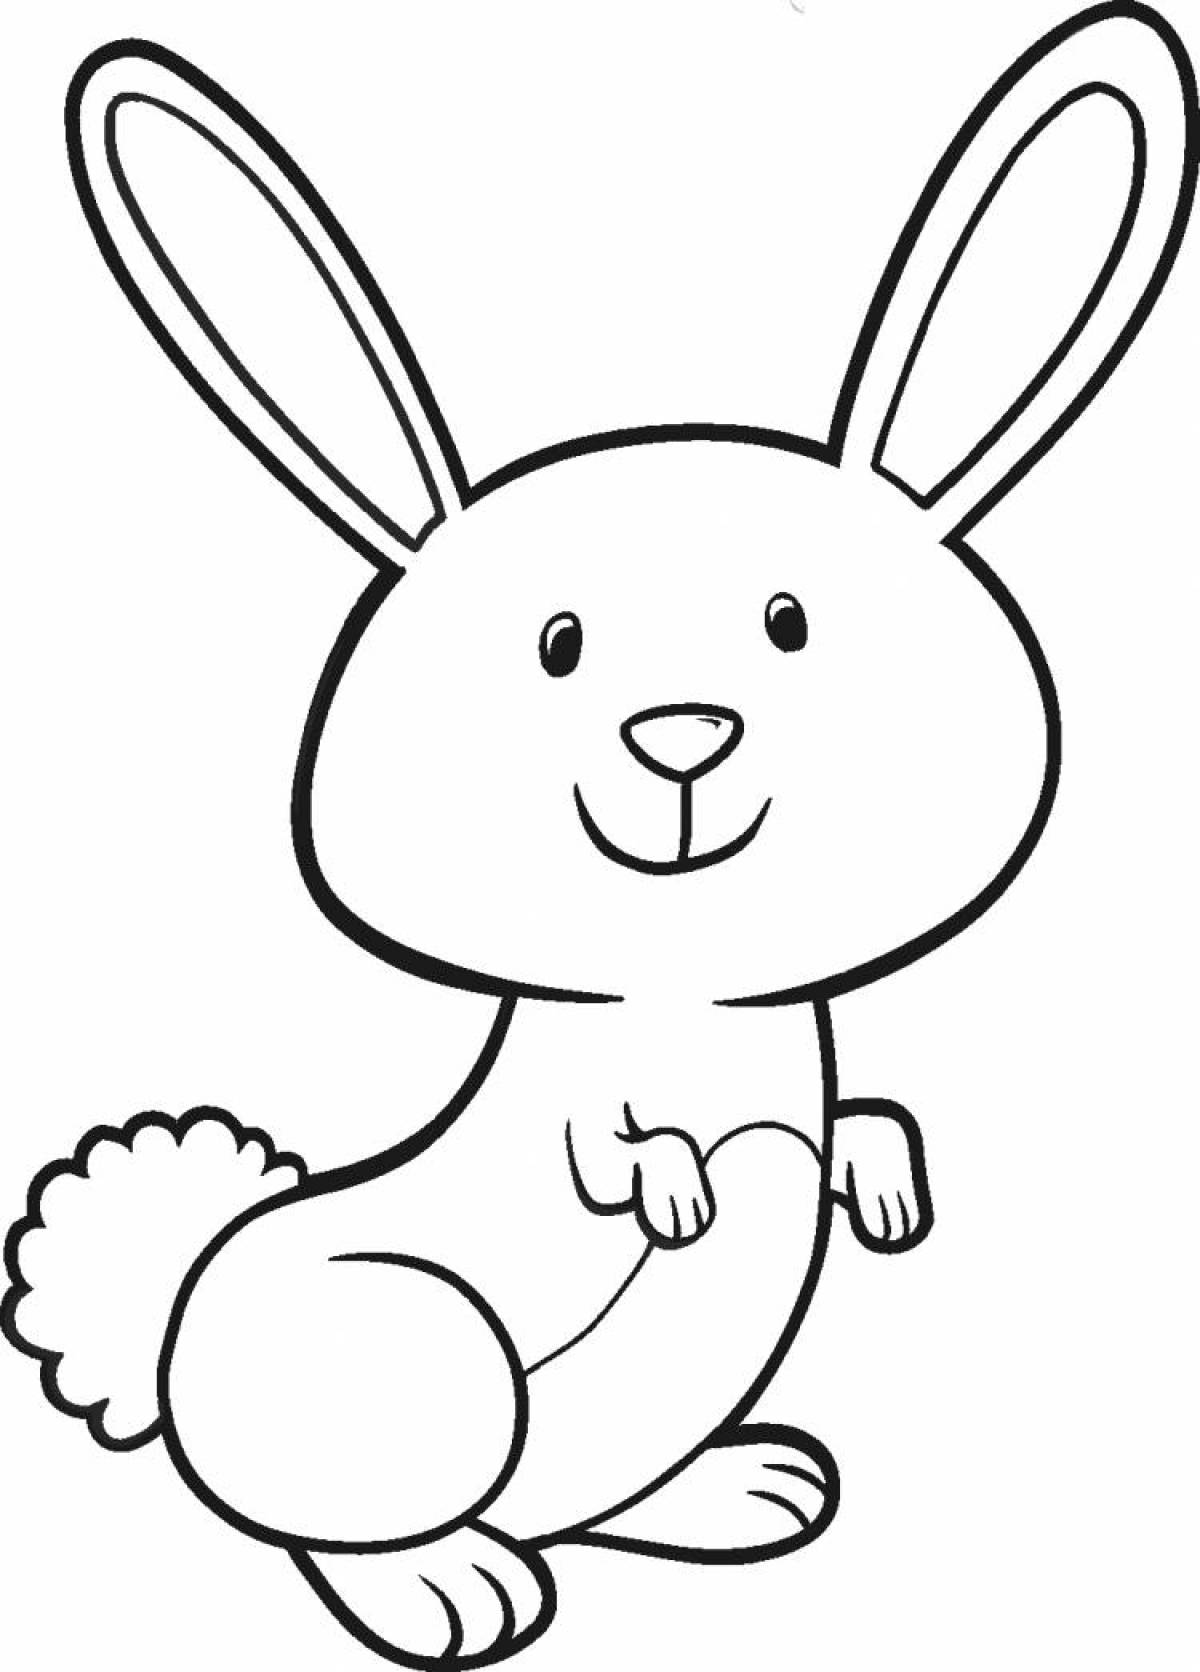 Причудливая раскраска page bunny picture